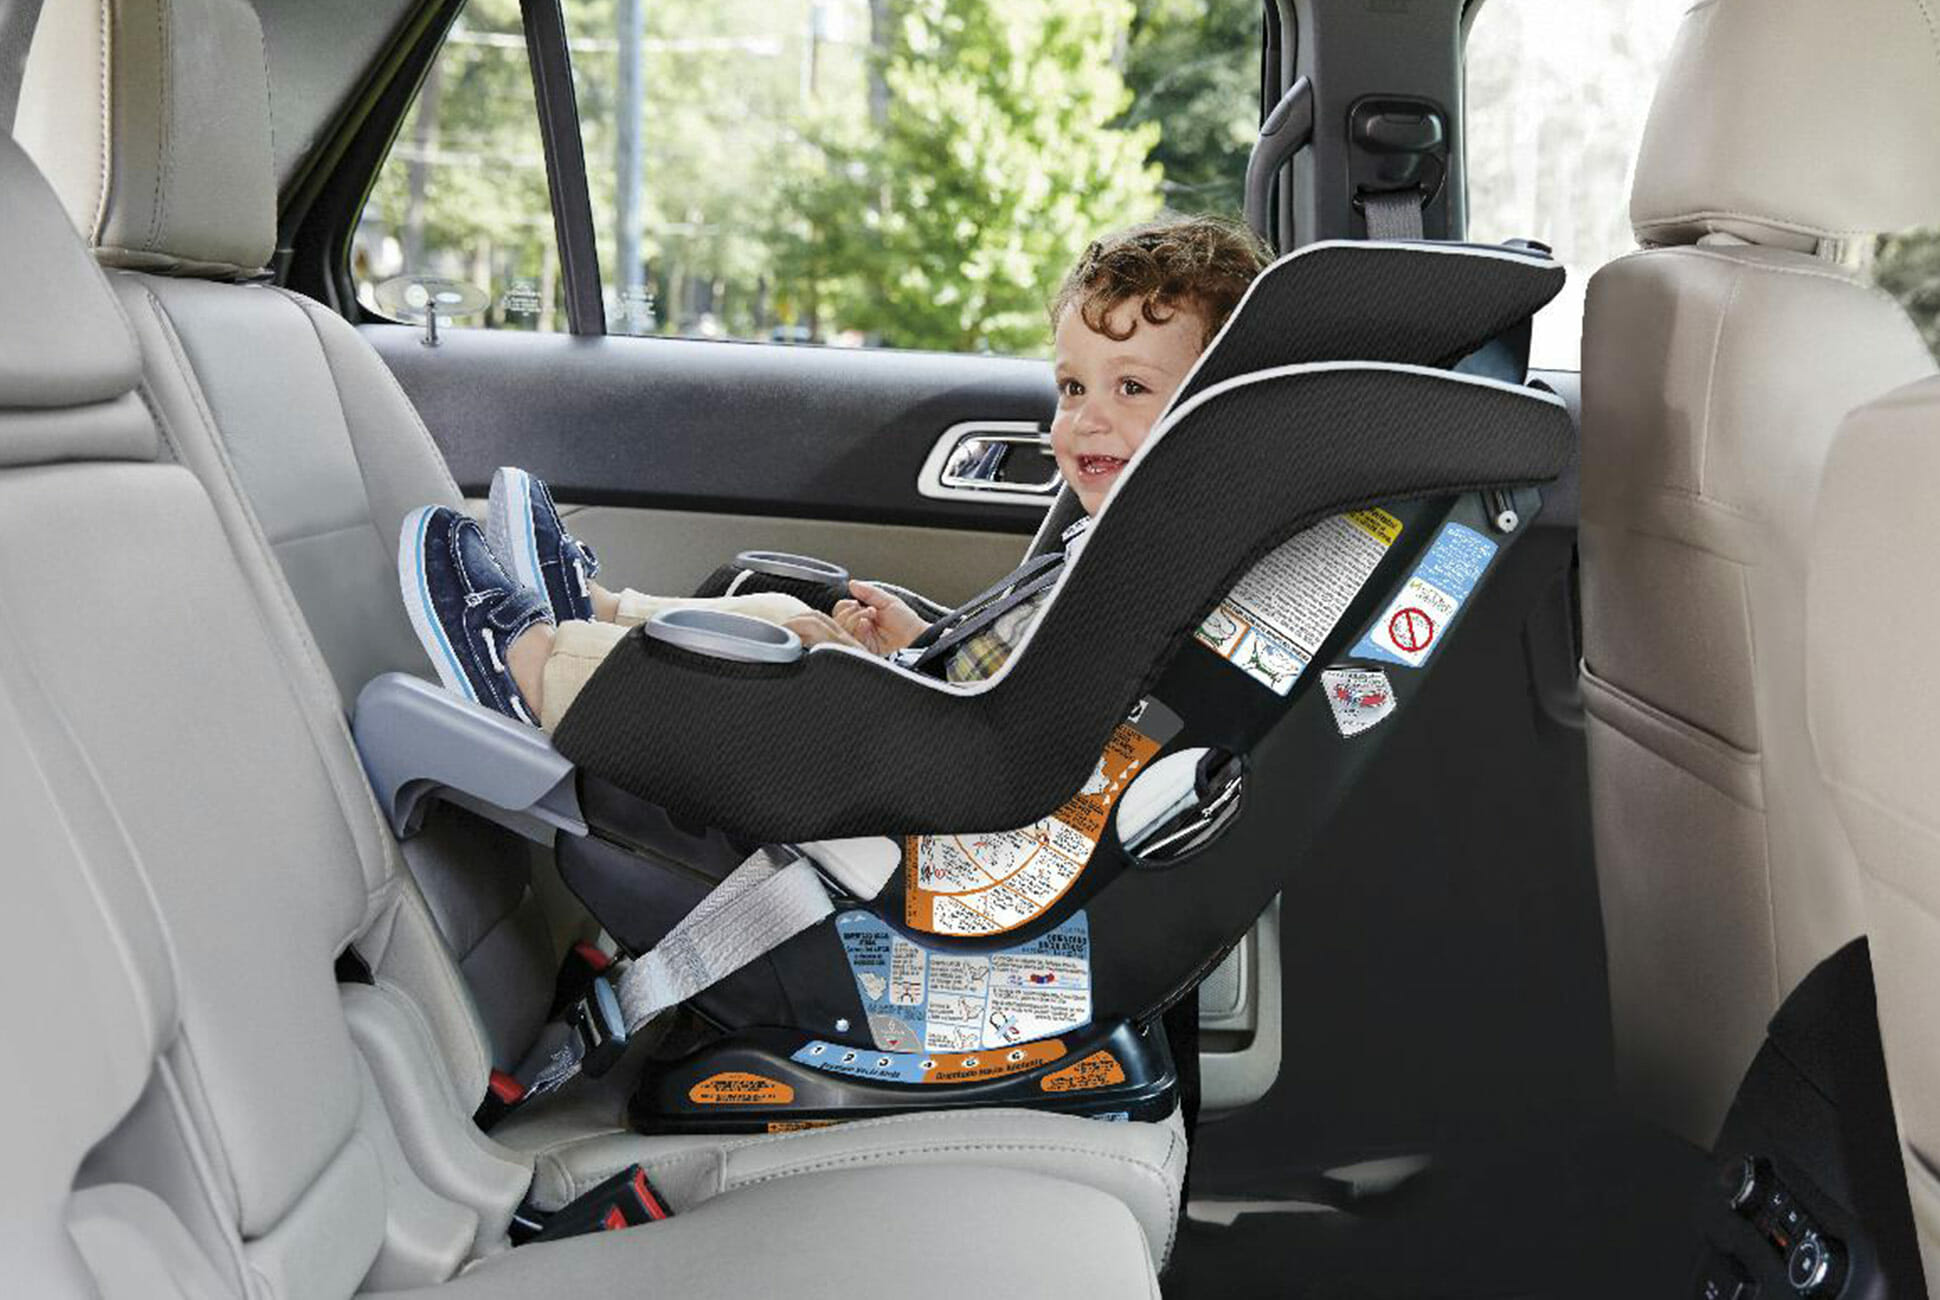 Можно автолюльку ставить на переднее сидение. Ребенок в автокресле. Автолюлька на заднем сидении. Детское автокресло в машине. Крепление детского кресла.